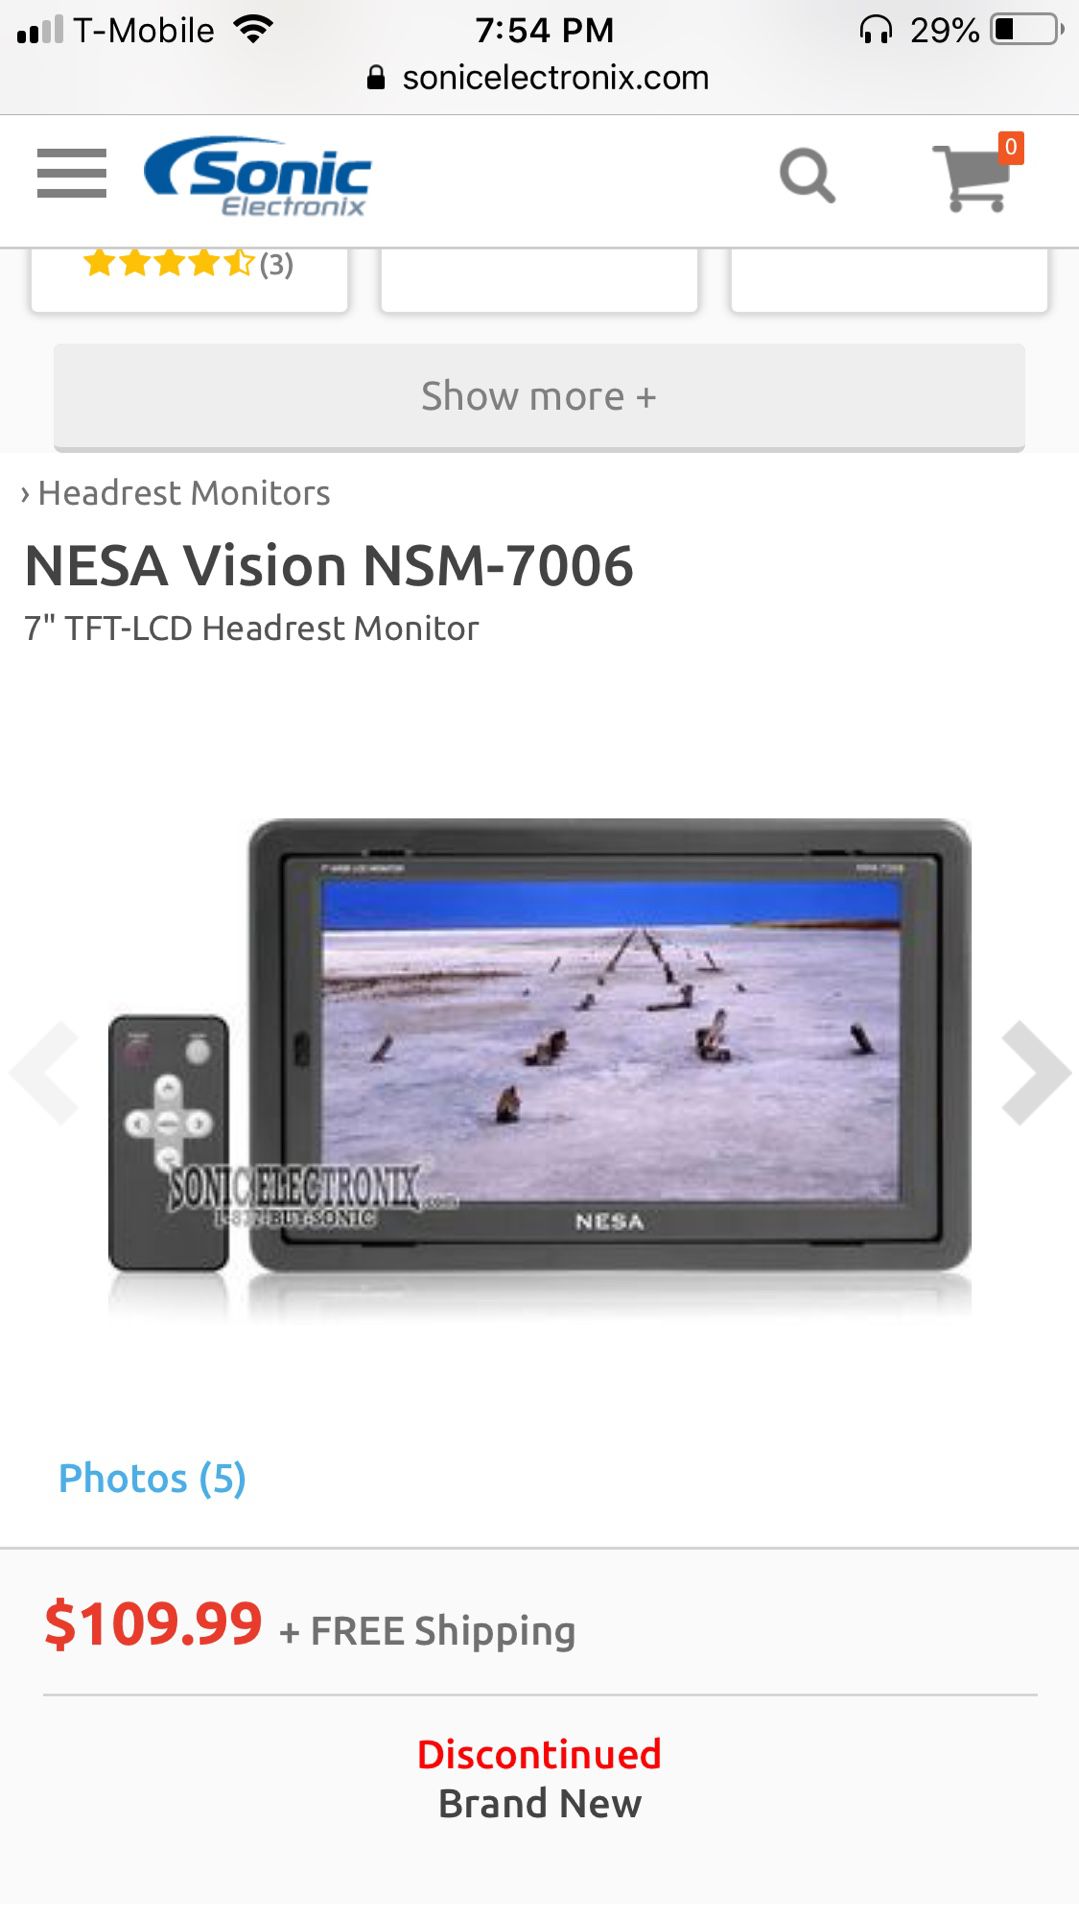 Nesa vision nsm-7006 monitors